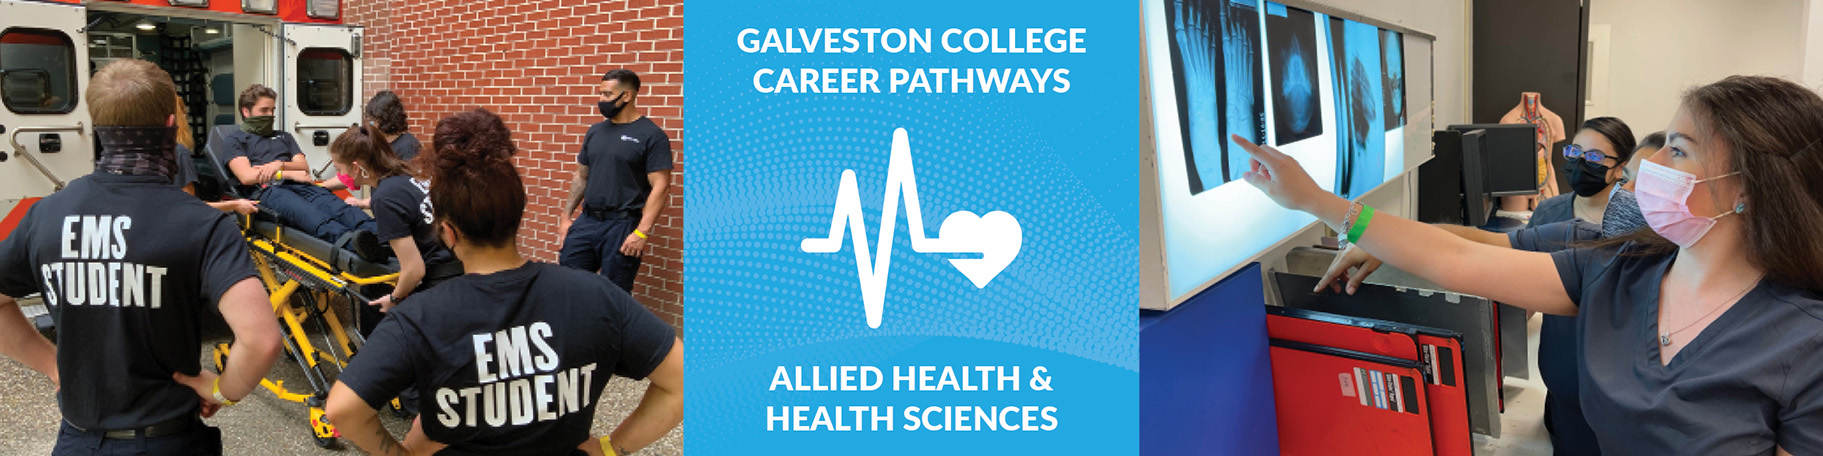 Galveston College Allied Health